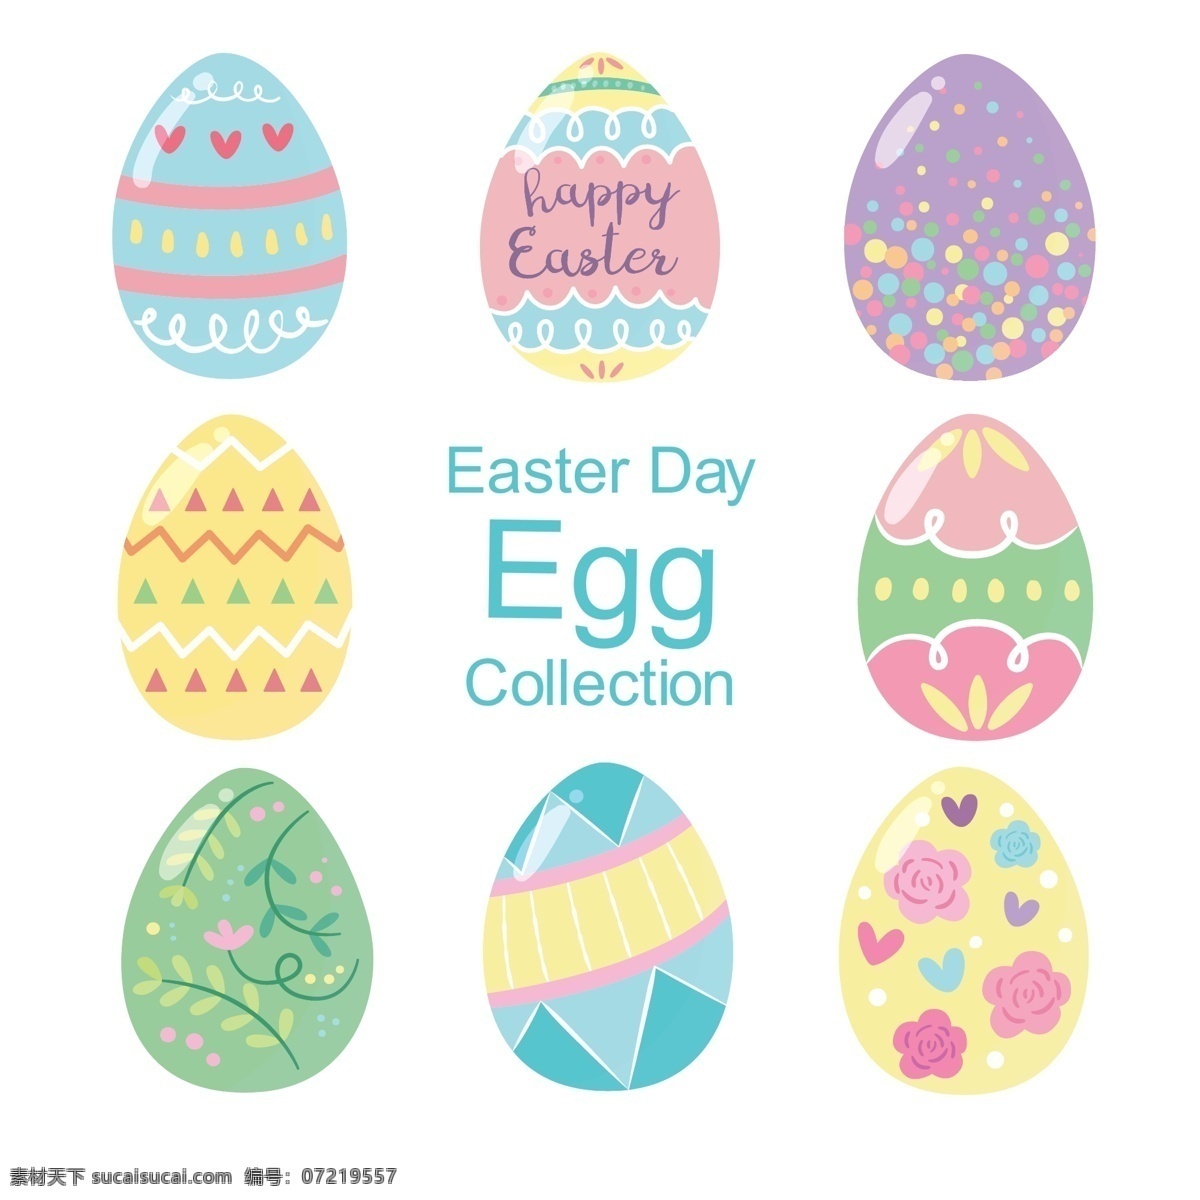 复活节 彩蛋 复活节素材 复活节彩蛋 可爱彩蛋 彩蛋素材 共享设计矢量 文化艺术 节日庆祝